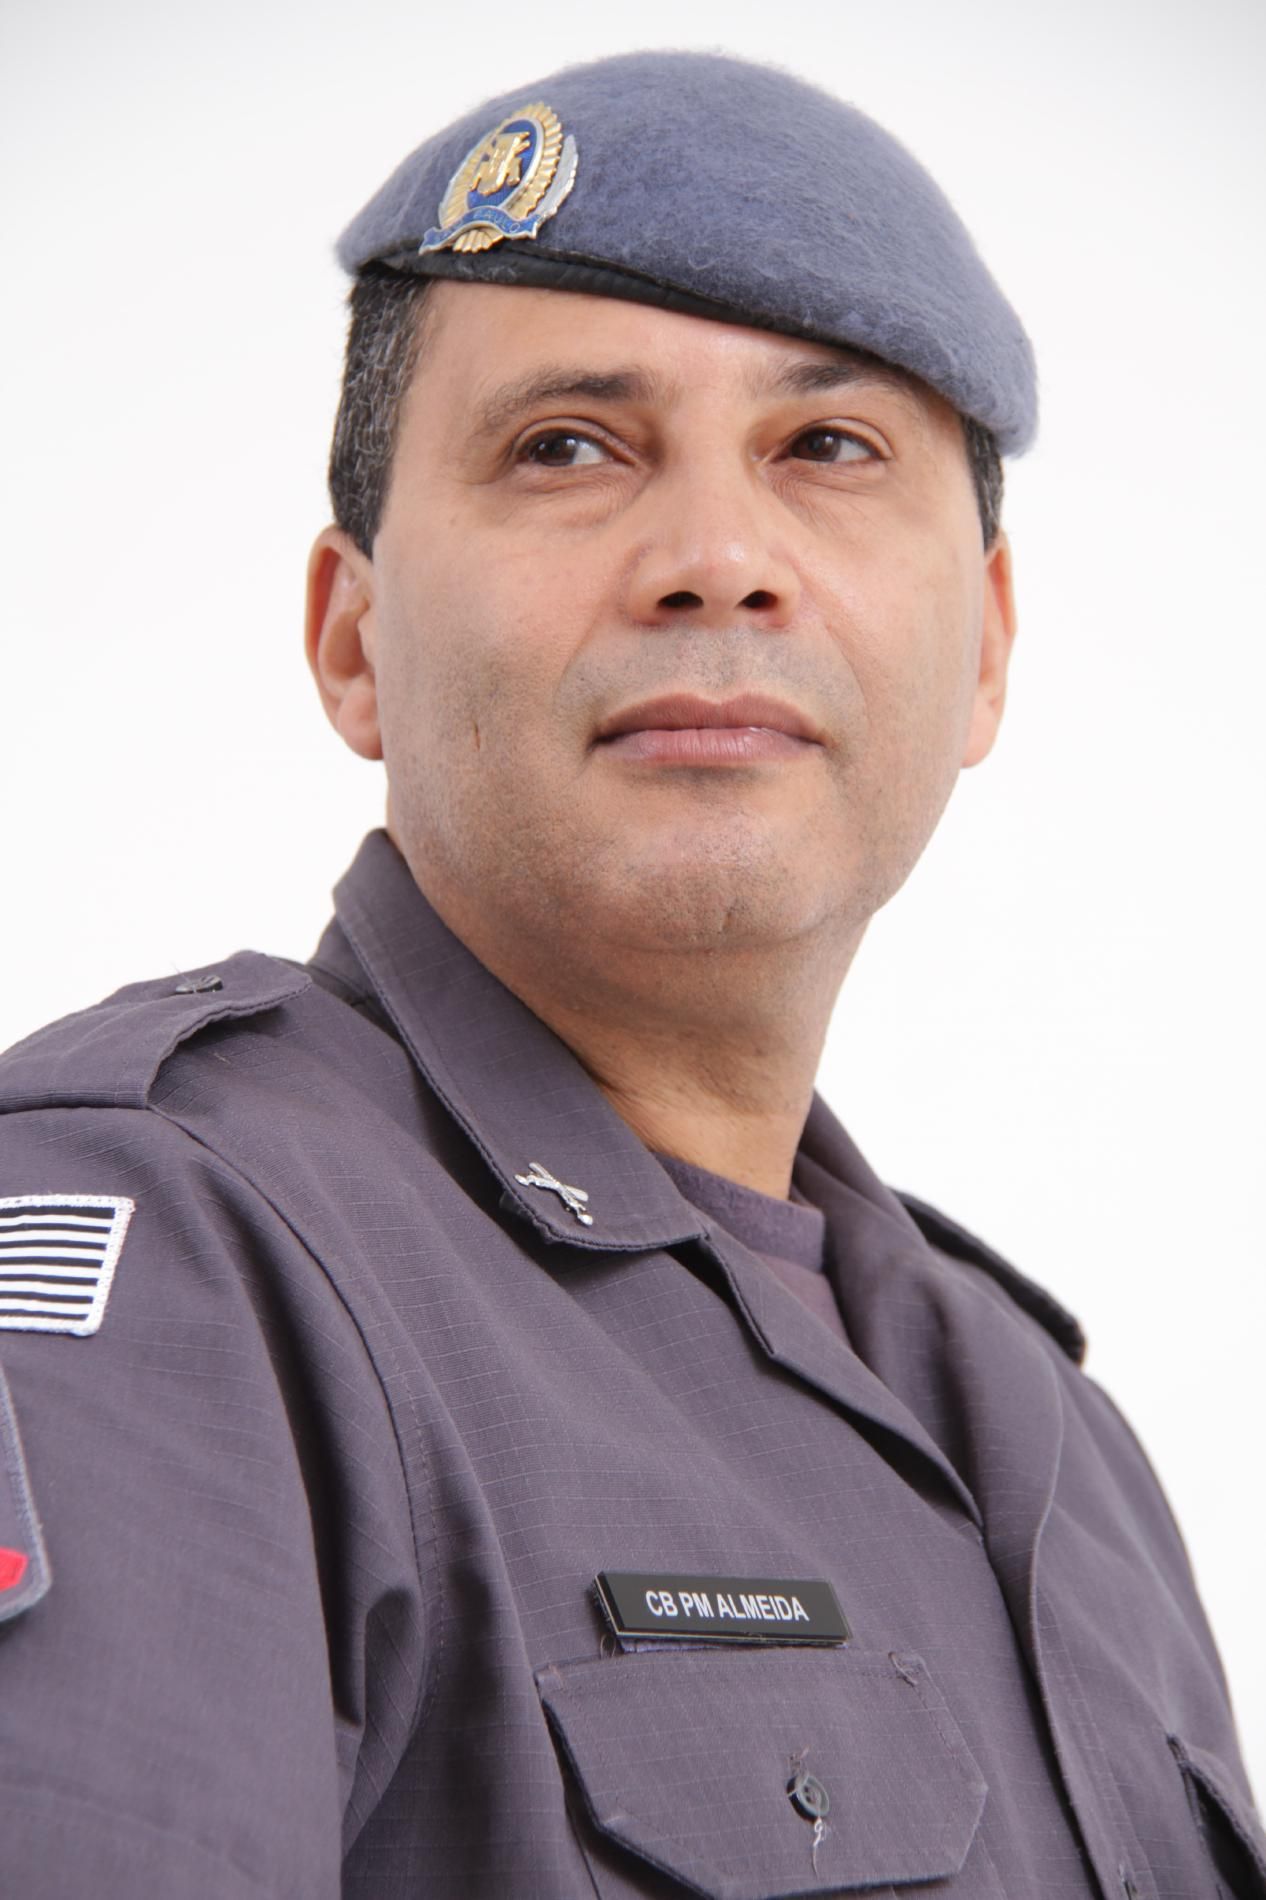 Sgt Almeida